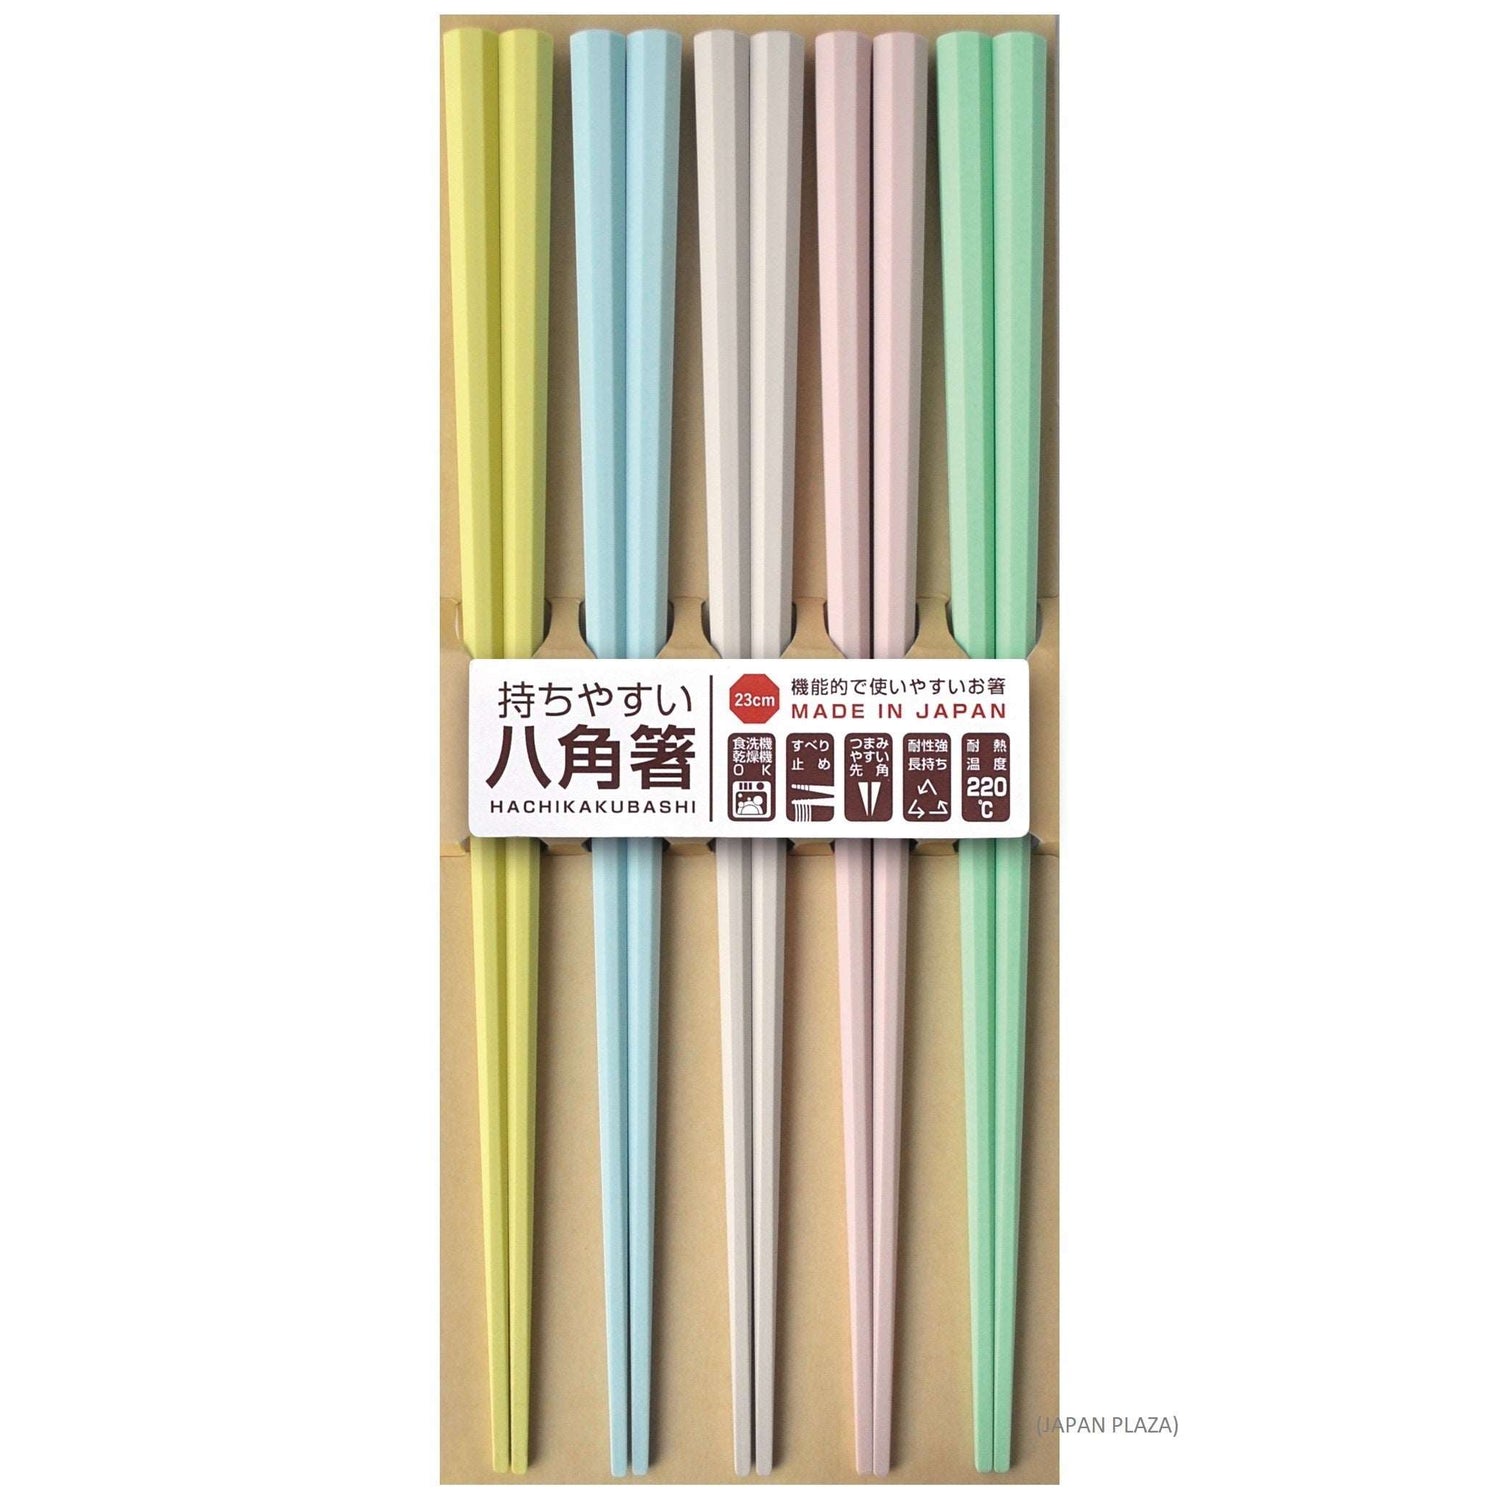 Chopsticks Octagon 5P - Dishwasher & Dryer Safe (Made in Japan)